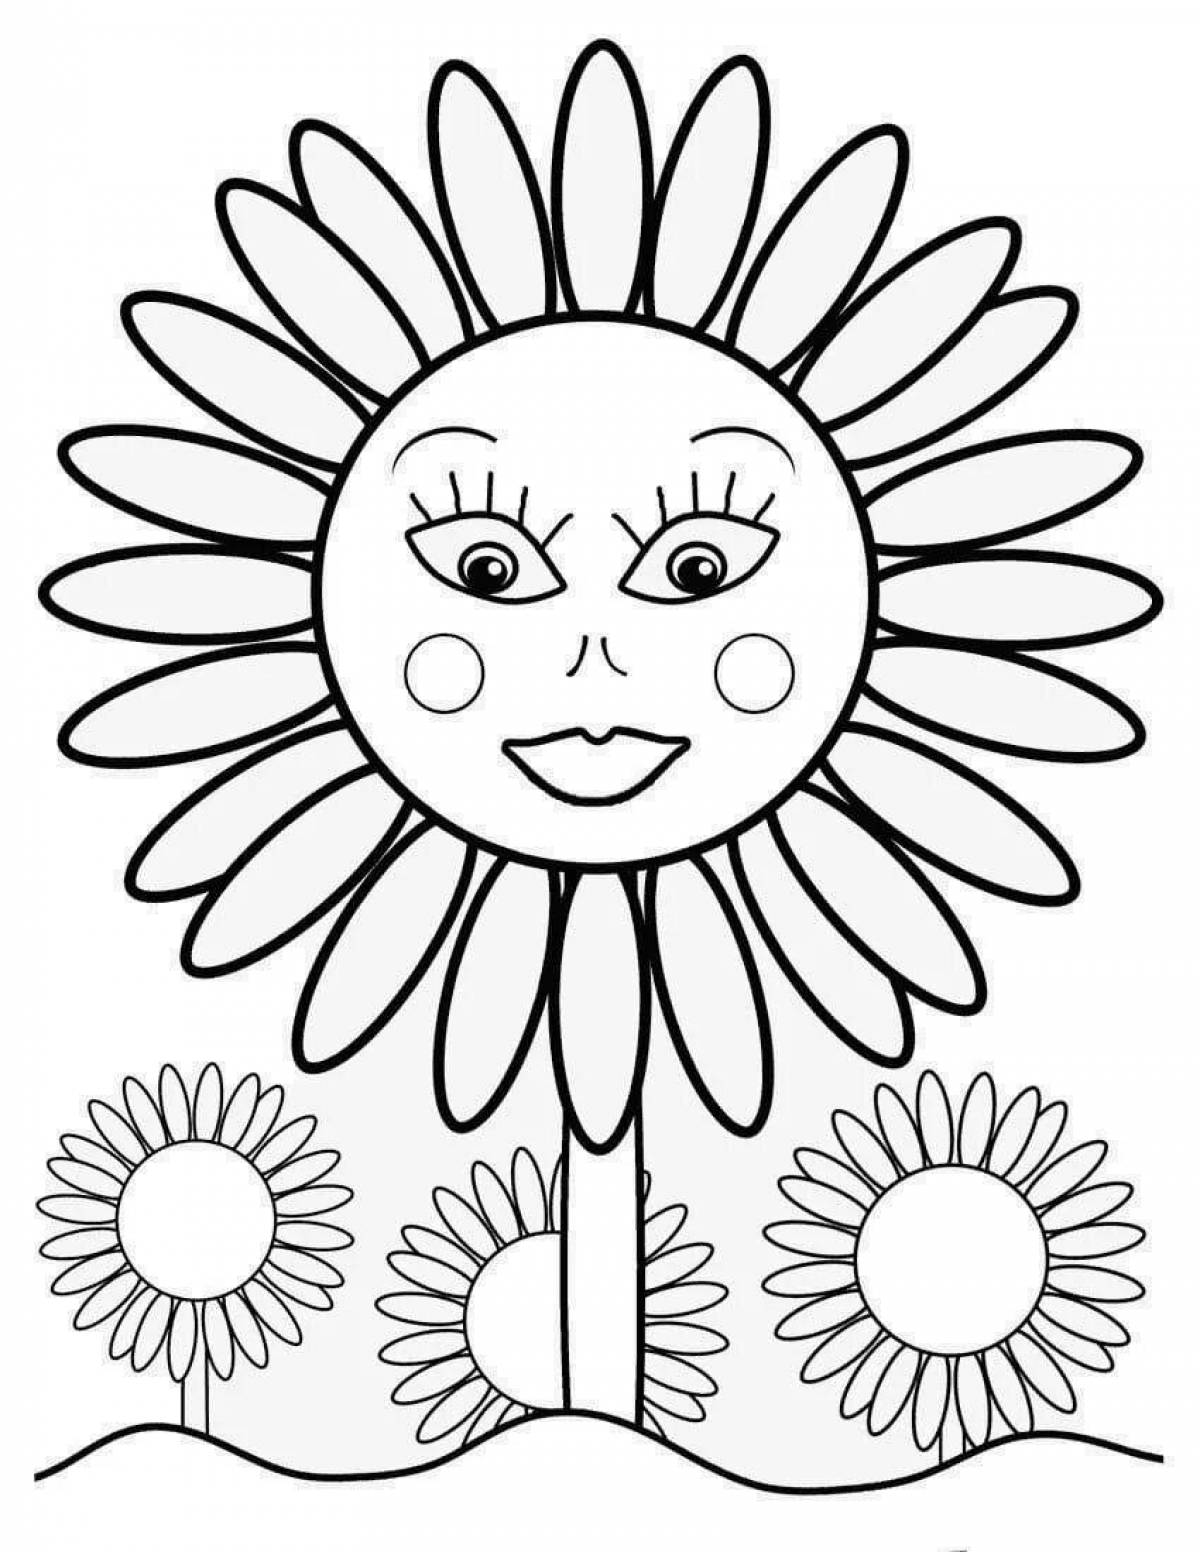 Лицо масленицы раскраска. Солнышко раскраска для детей. Подсолнух раскраска для детей. Солнце раскраска для детей. Раскраска Масленица для детей.